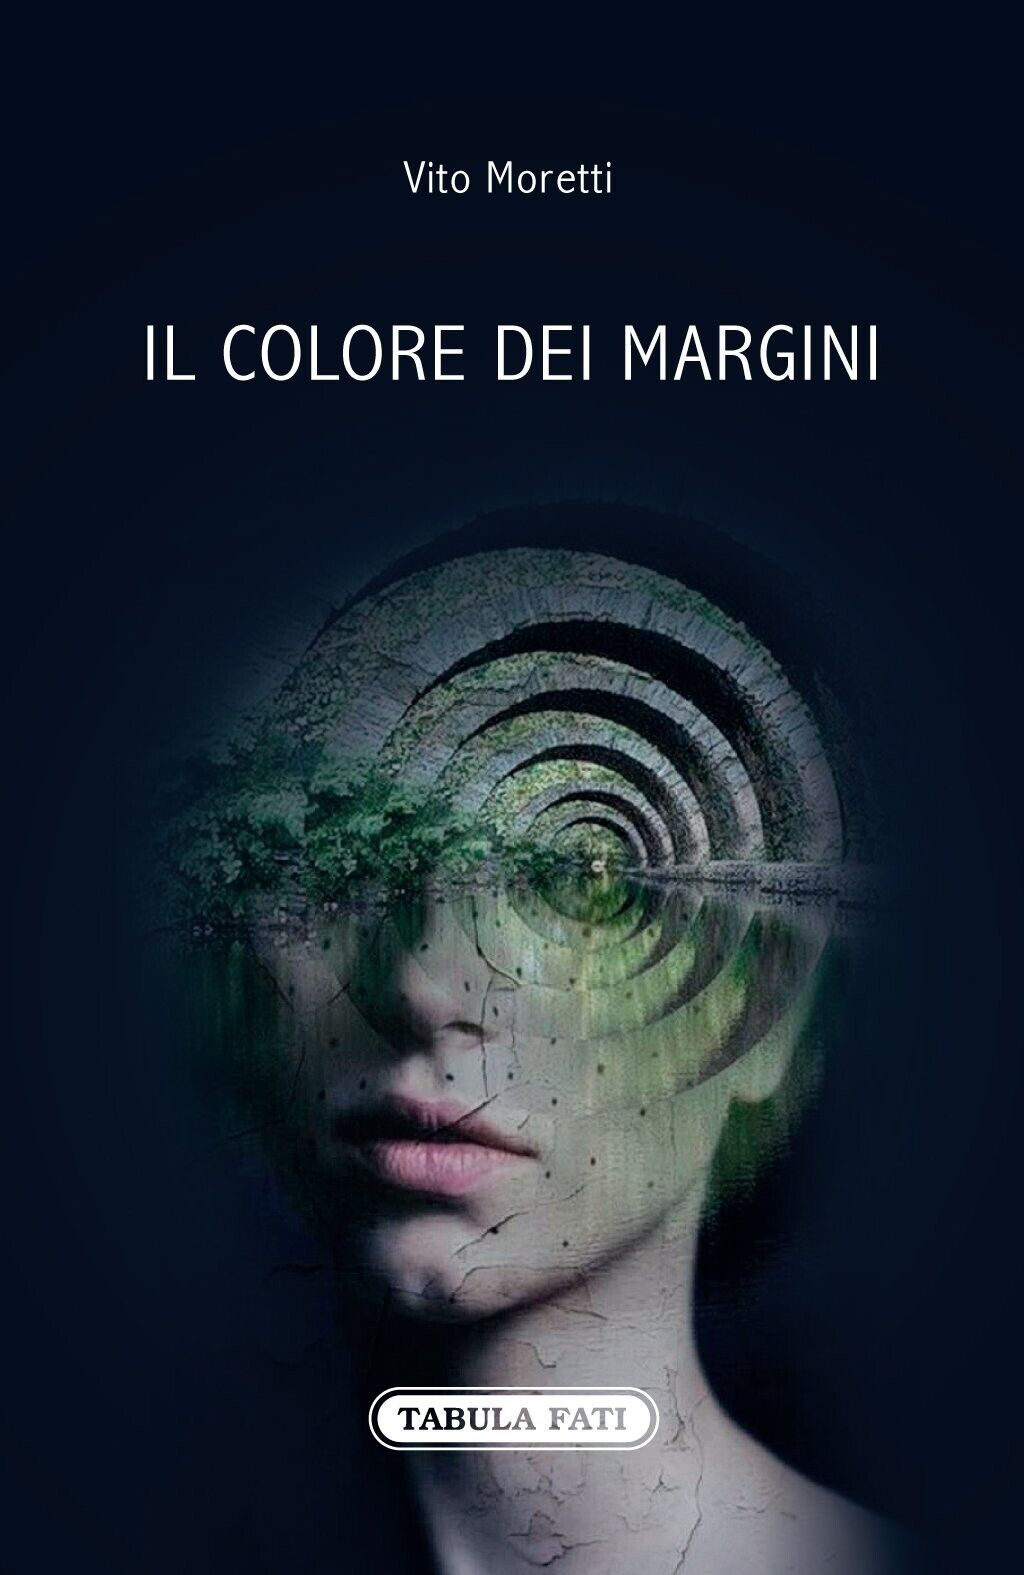 Il colore dei margini di Vito Moretti, 2014, Tabula Fati libro usato